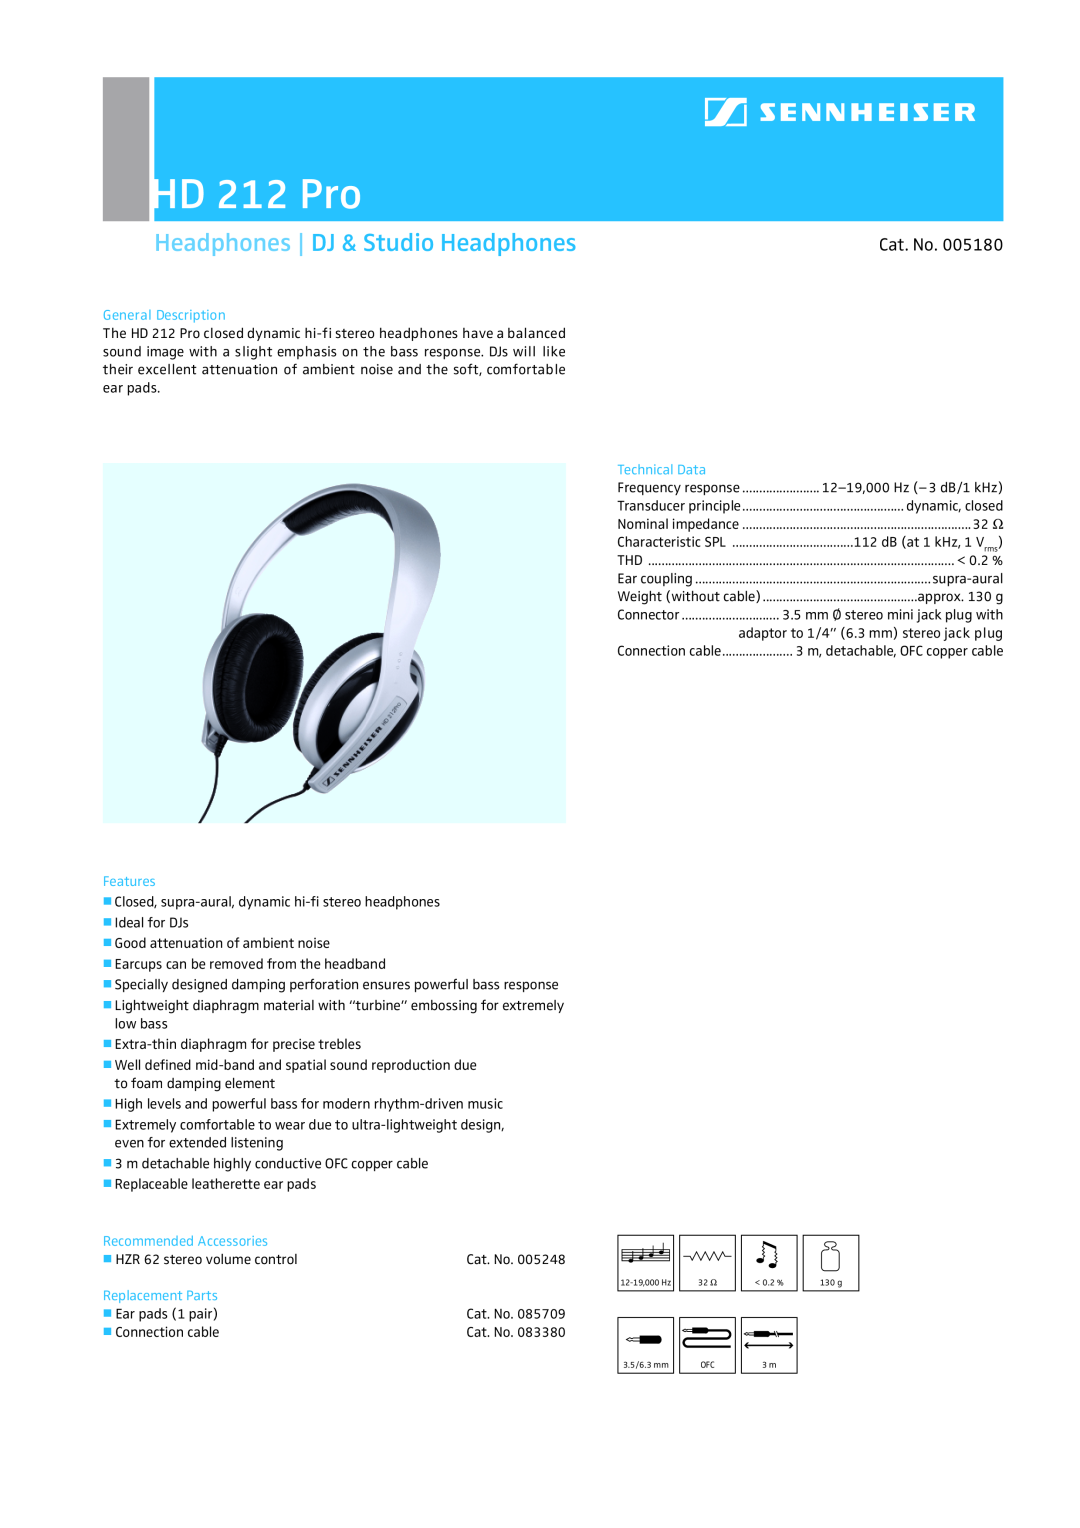 Sennheiser HD 212 Pro manual Headphones DJ & Studio Headphones, Cat. No, General Description, Technical Data, Features 